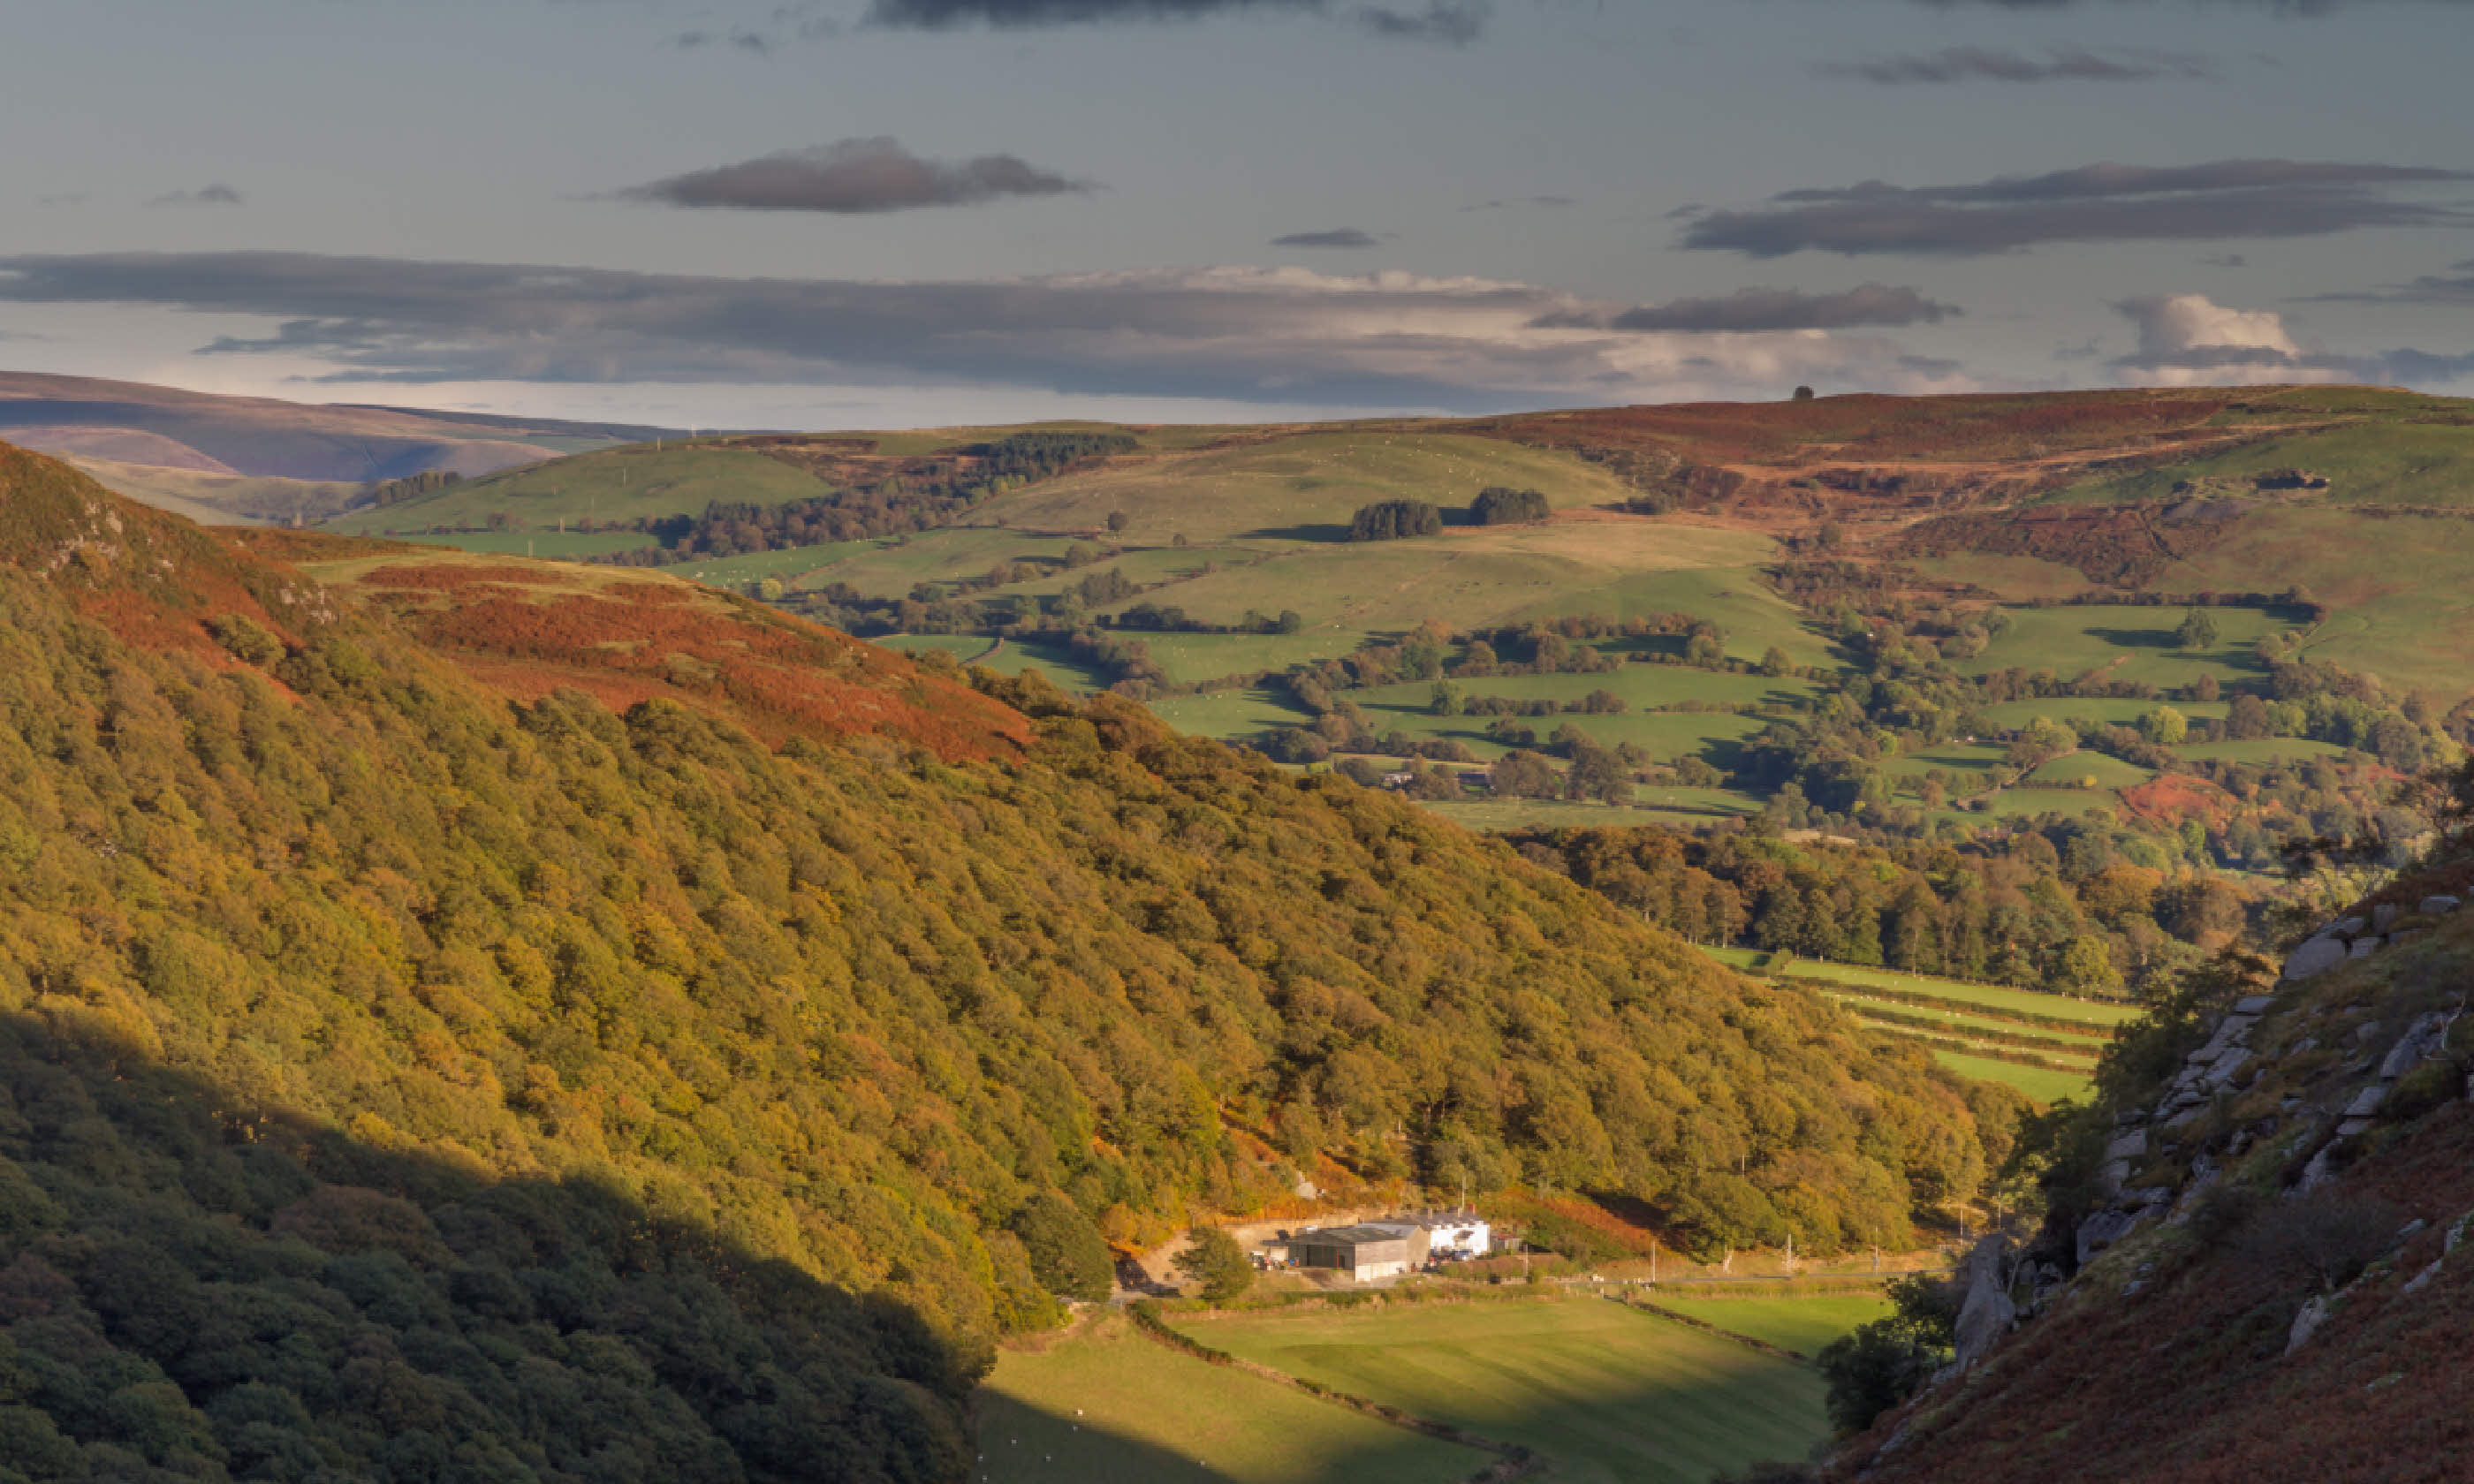 Autumn in Elan Valley, Powys (Shutterstock)